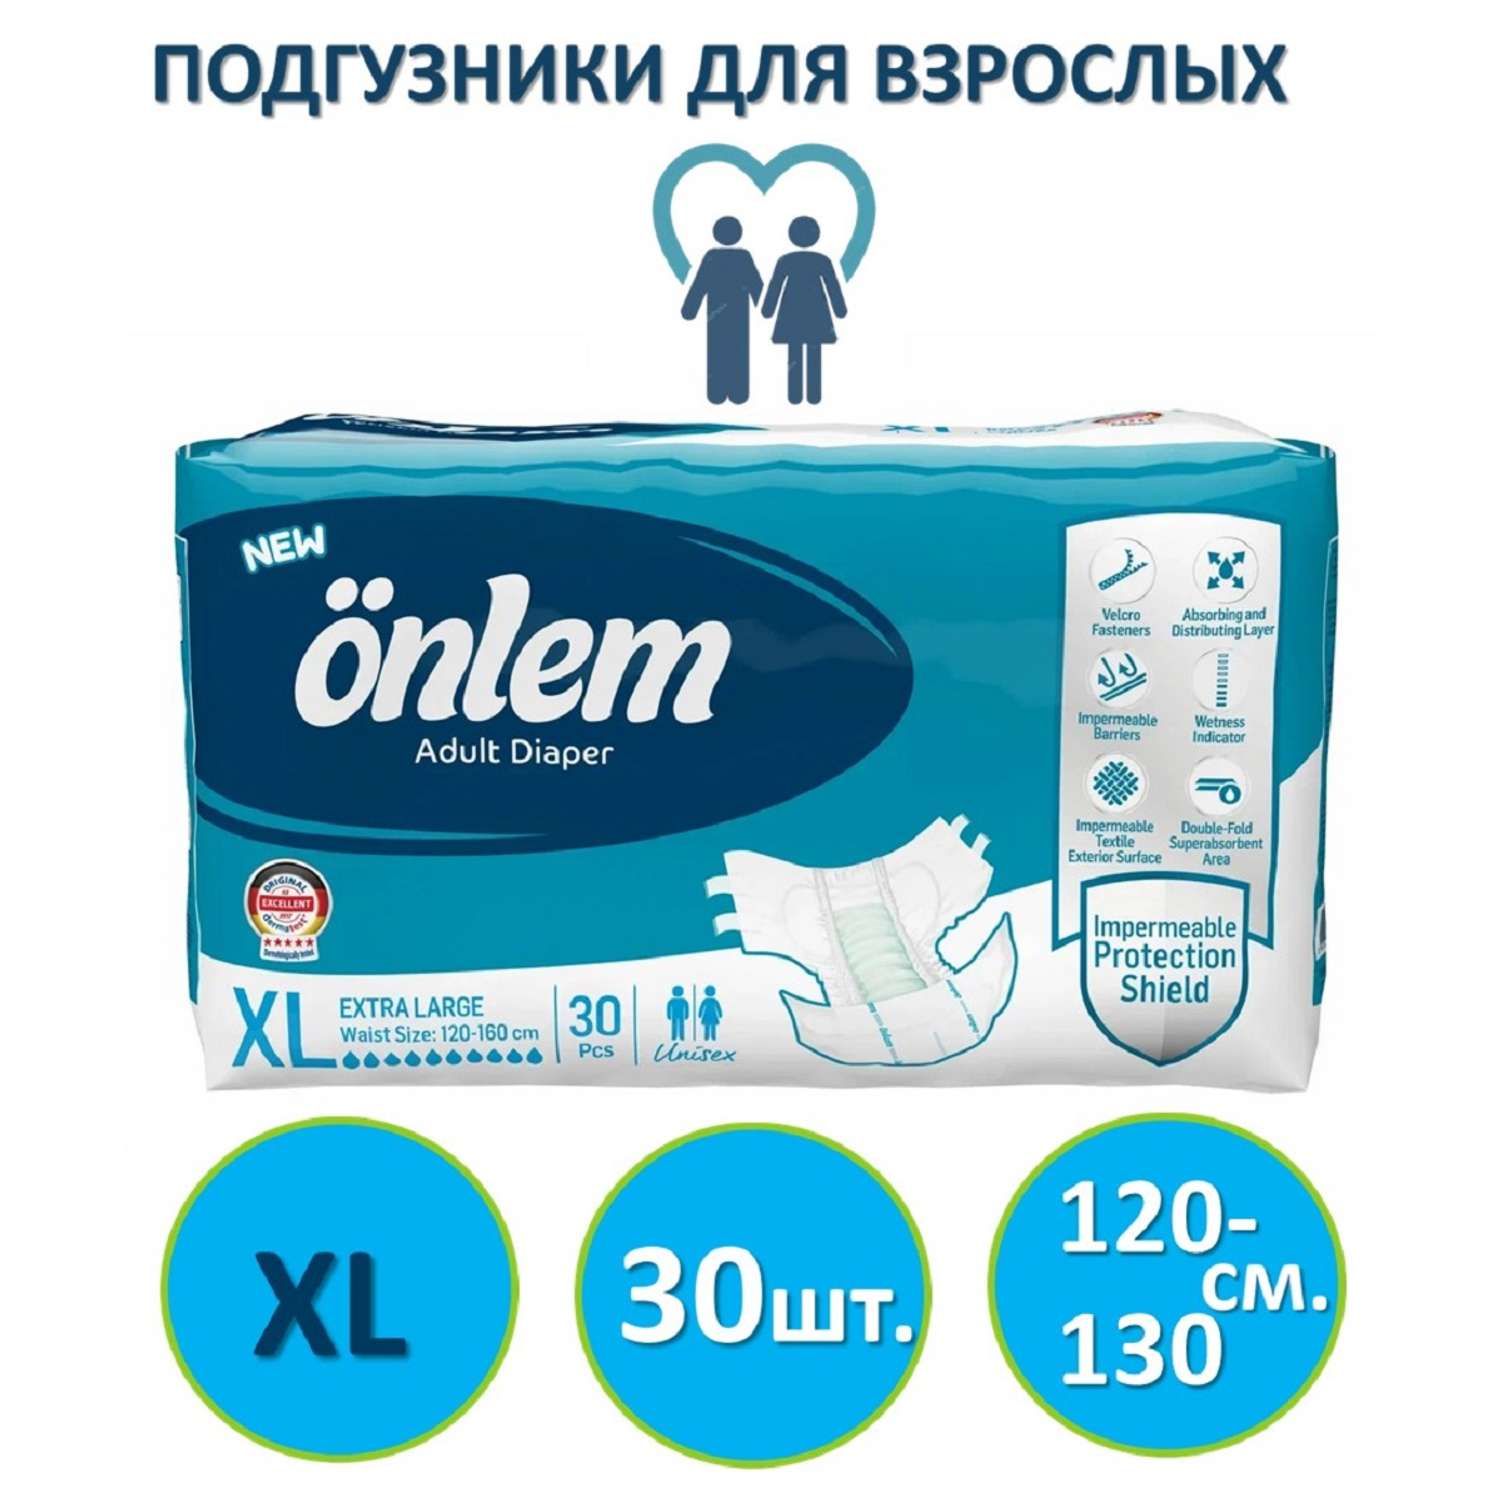 Подгузники для взрослых Onlem размер XL (120-160cм.) 30 шт. в упаковке - фото 1